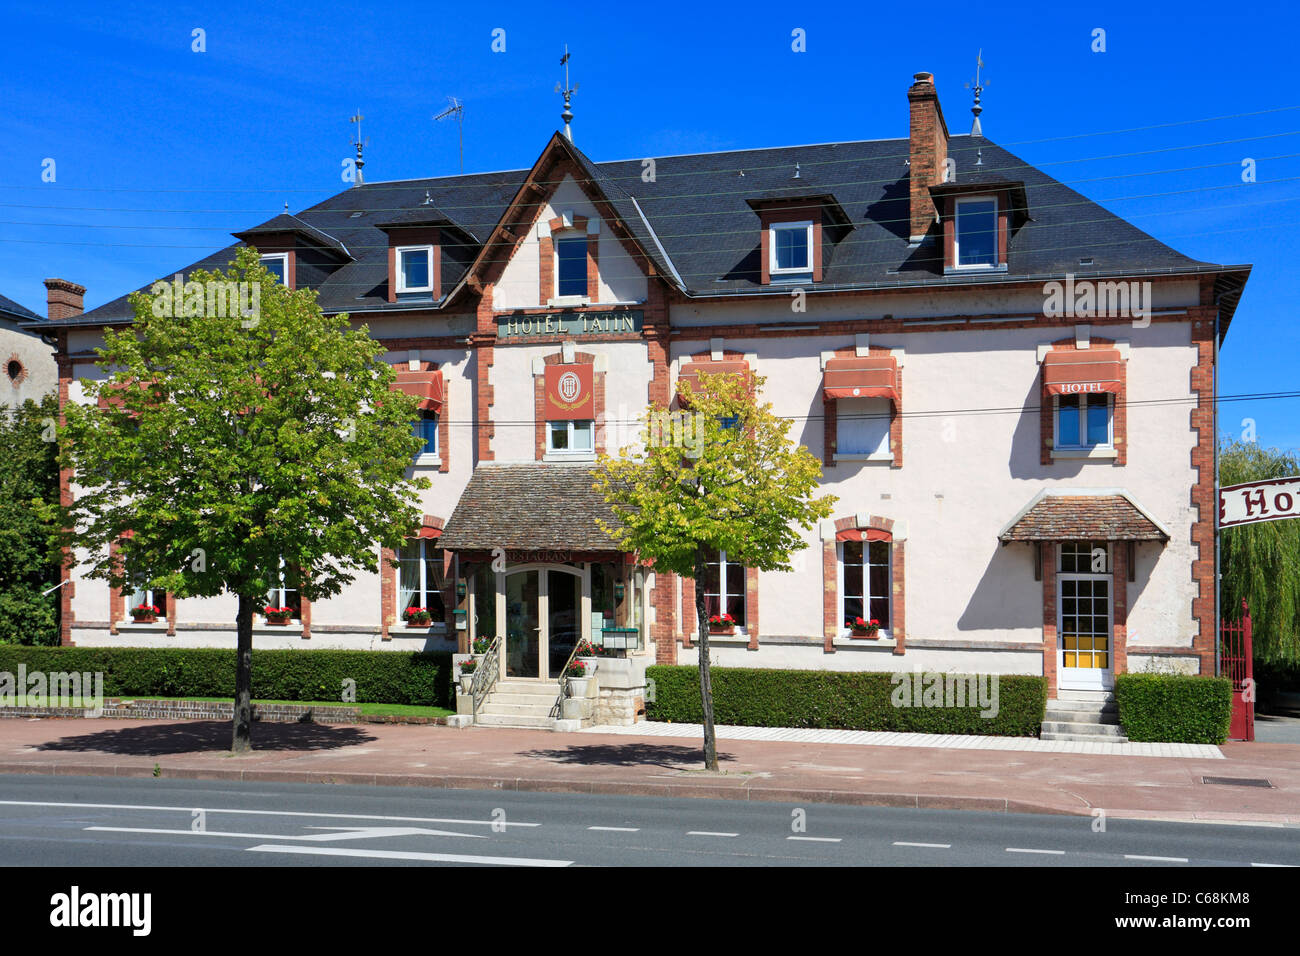 Hôtel Tatin Tarte Tatin où a été créé la première fois en 1889, Lamotte Beuvron, Angouleme, France, Europe. Banque D'Images